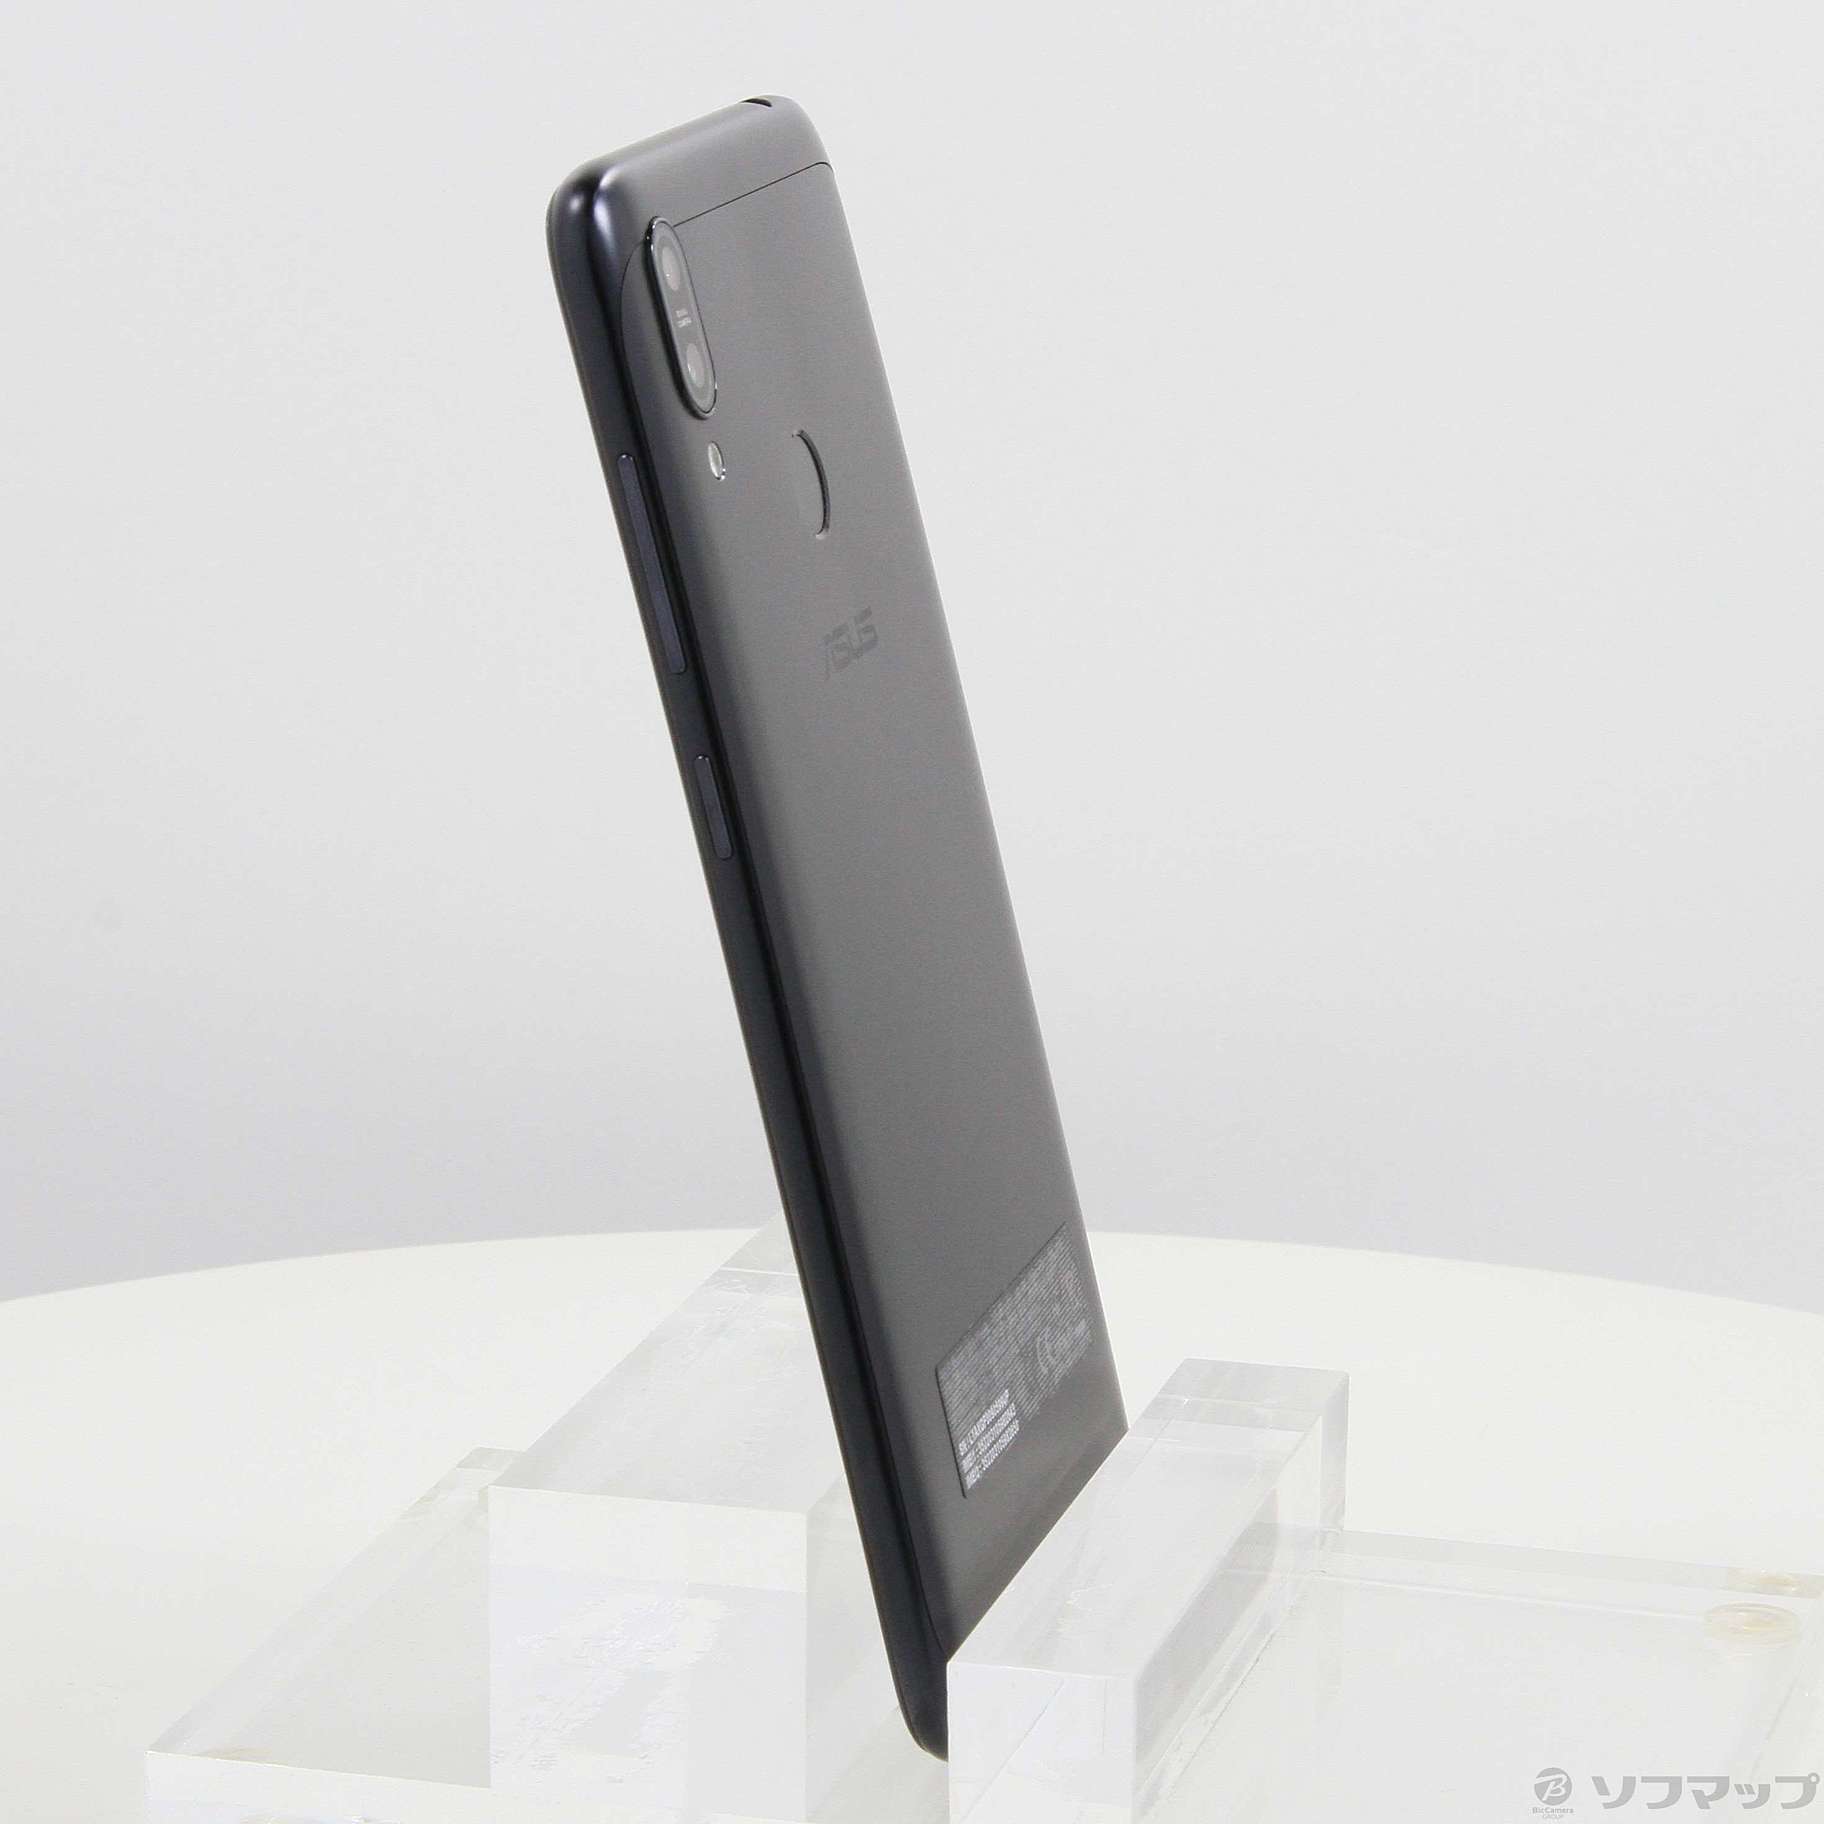 【新品未使用】Zenfone Max(M2) 64GB ミッドナイトブラック